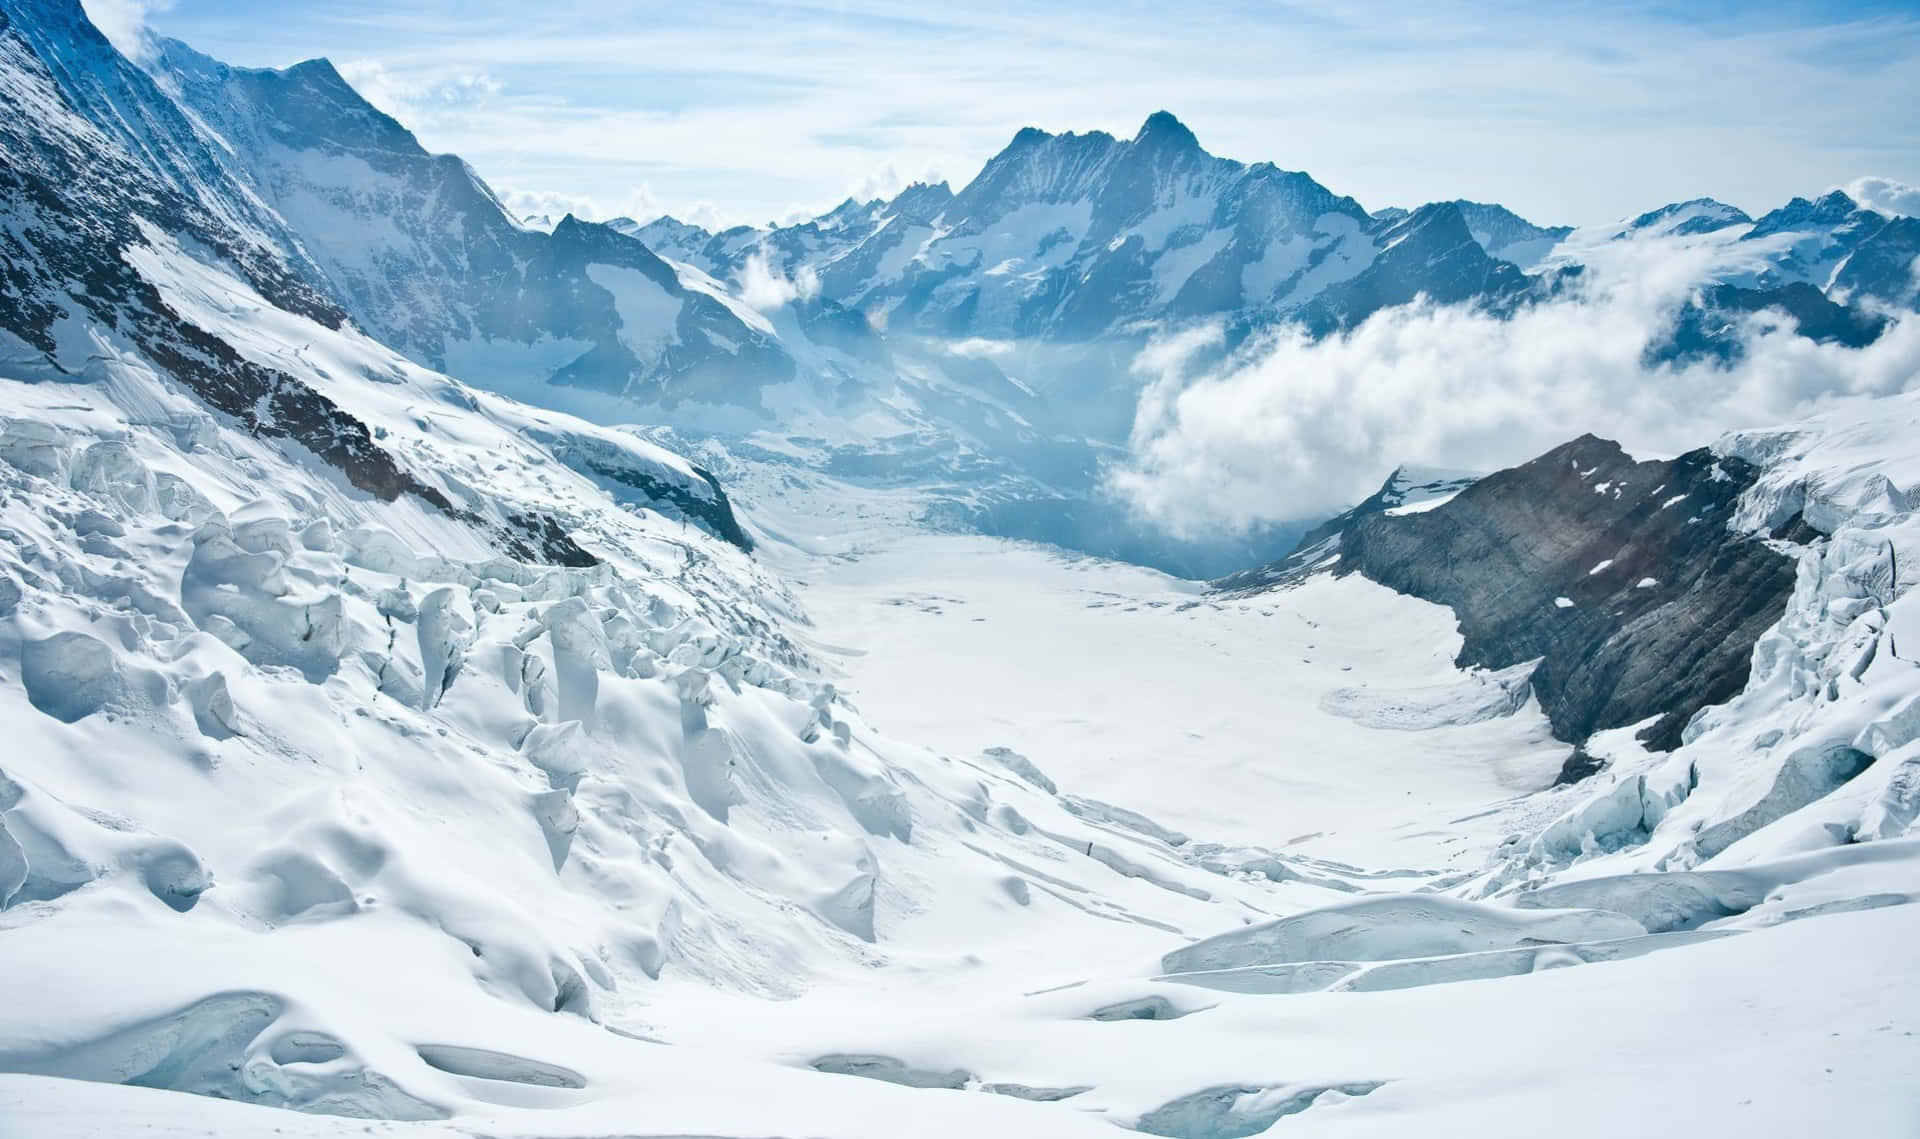 Unacordillera Con Montañas Cubiertas De Nieve Y Glaciares